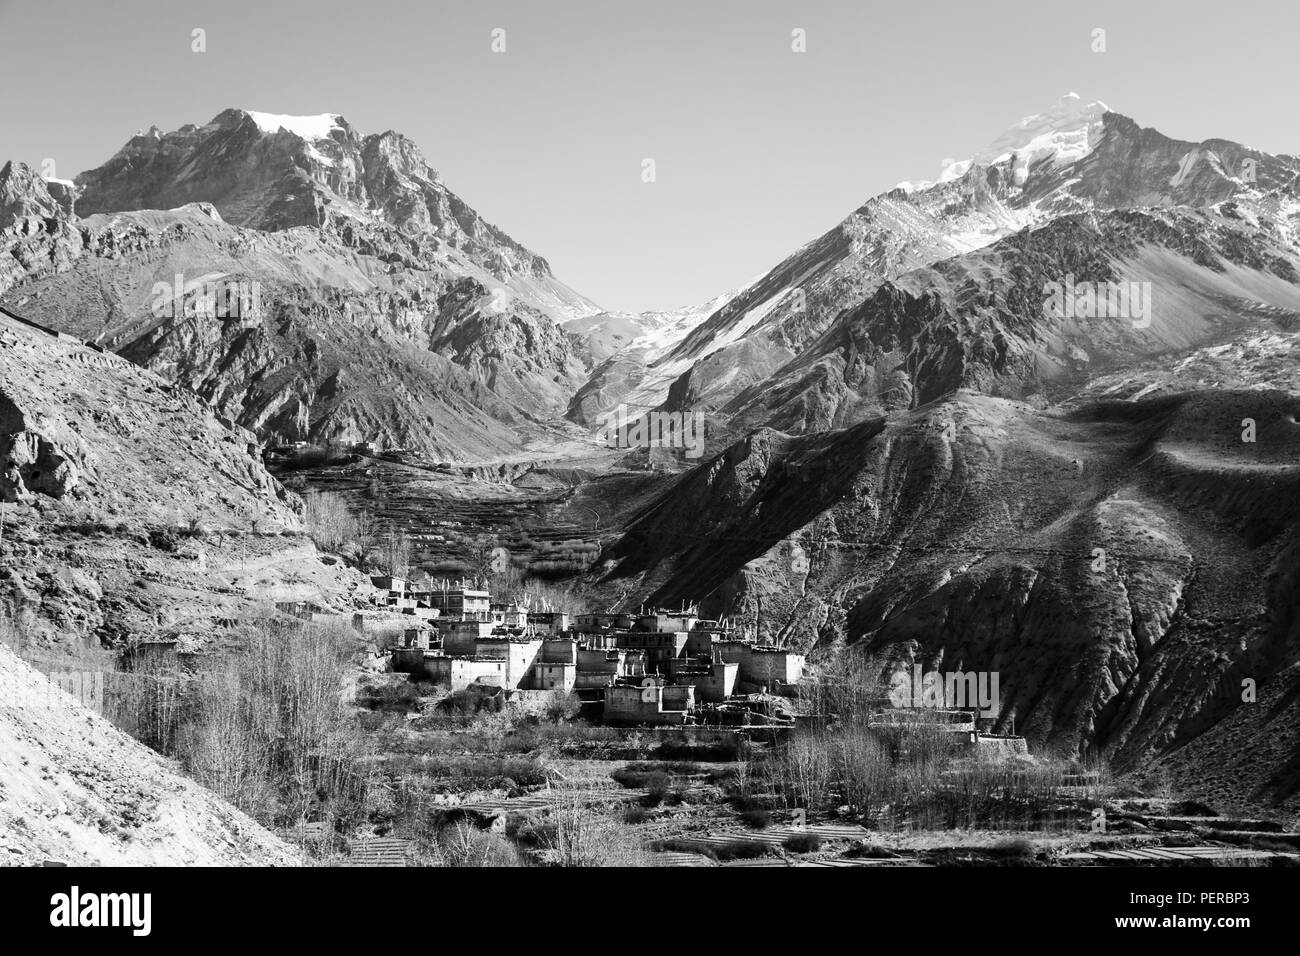 Une vue de la Thorung La pass de l'Muktinah valley le long du circuit de l'Annapurna trek dans l'Himalaya au Népal Banque D'Images